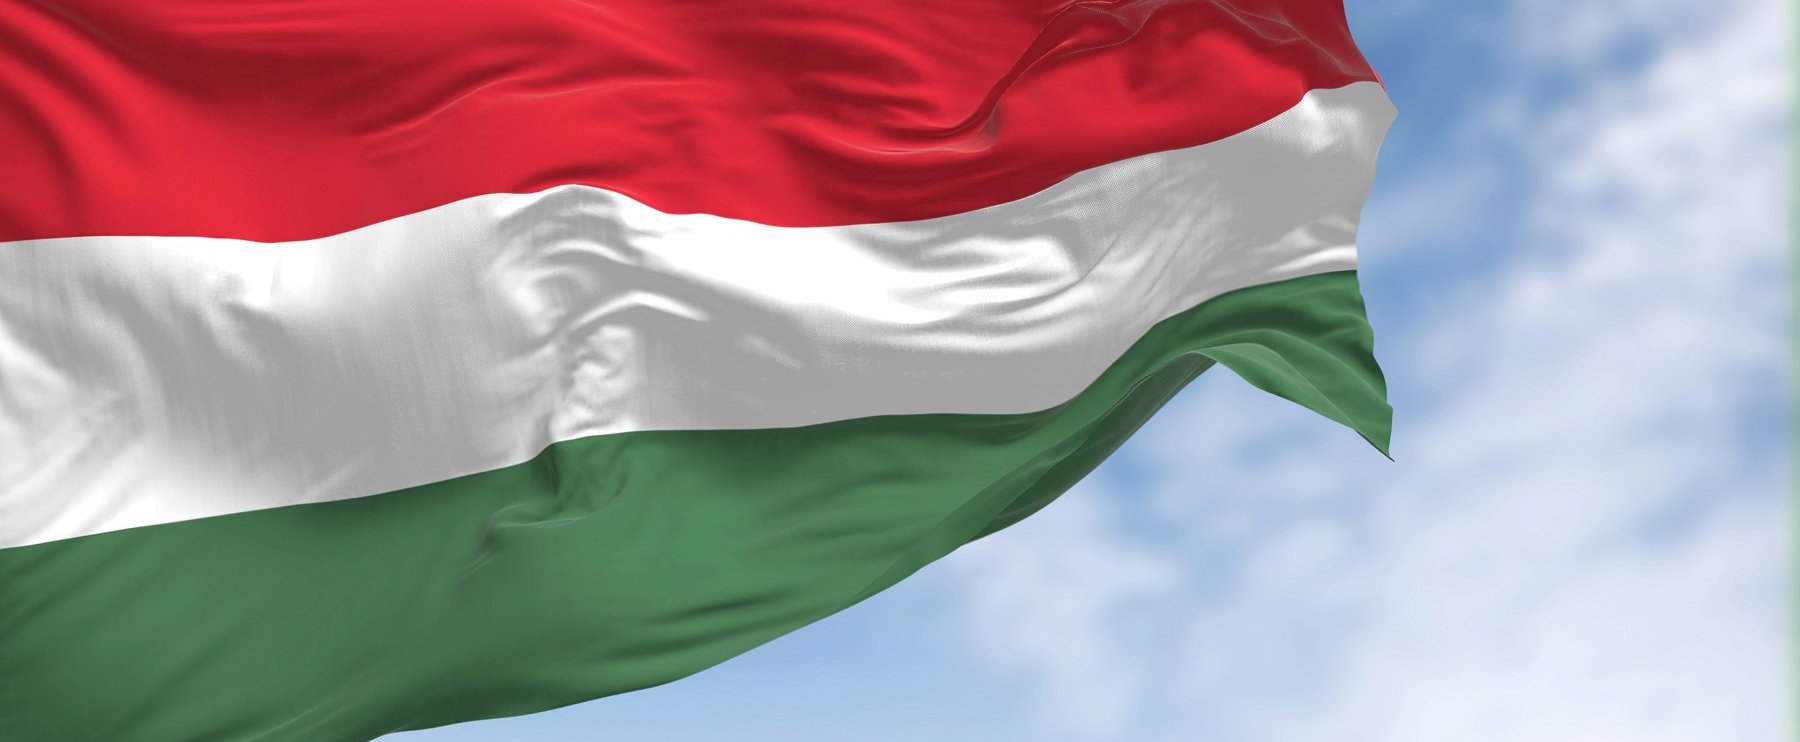 Magyarország is ott van az angolok listáján, külön kihangsúlyoztak minket, ez már hivatalos